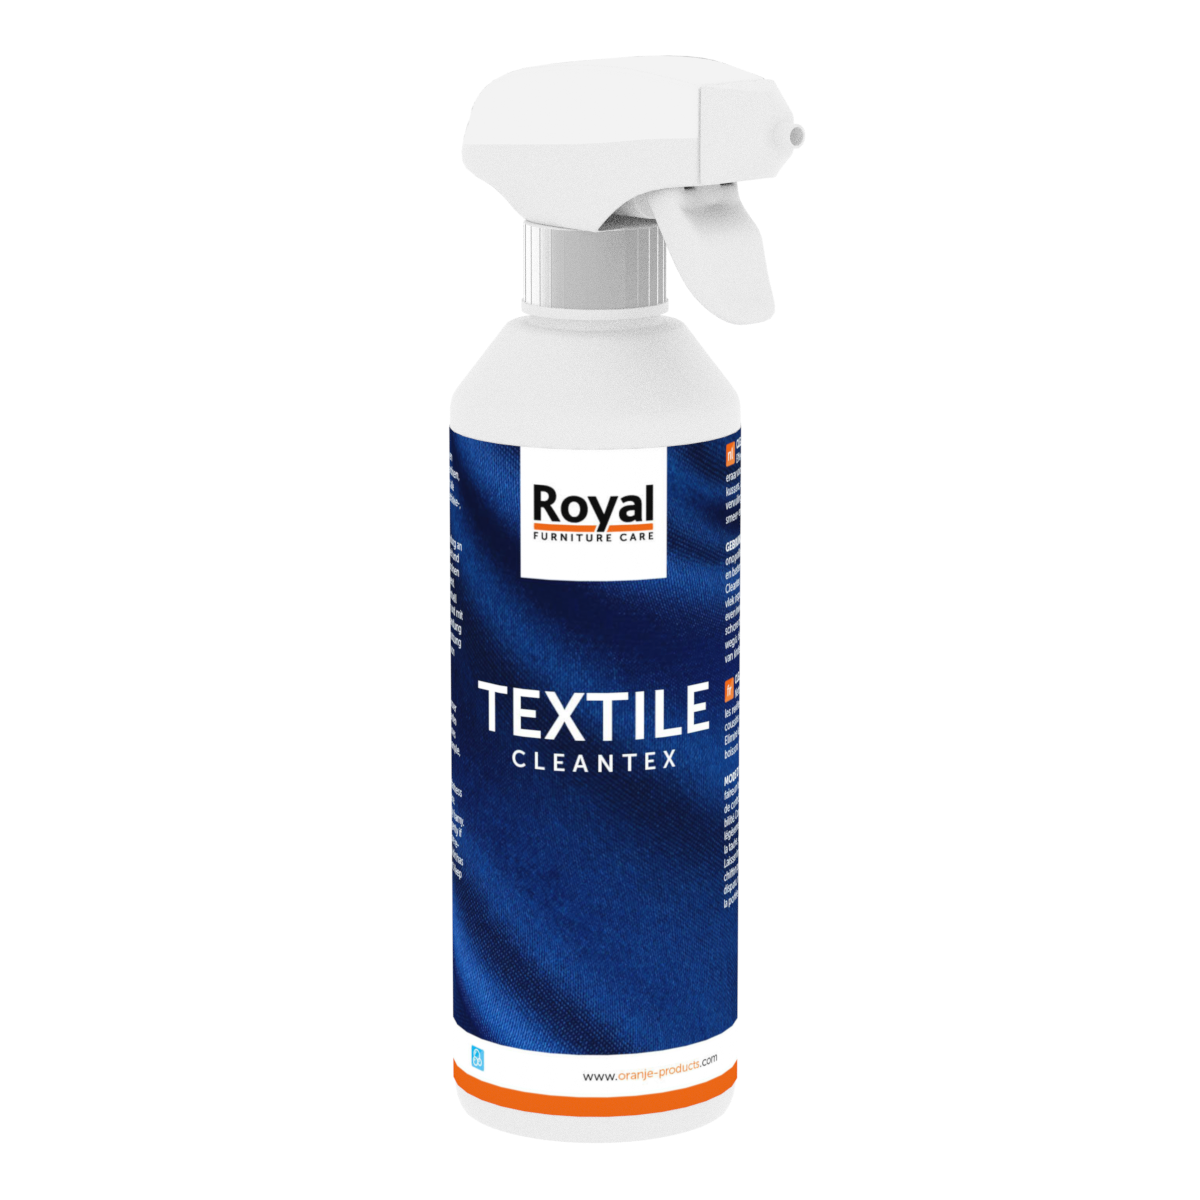 Textile Cleantex 500ml